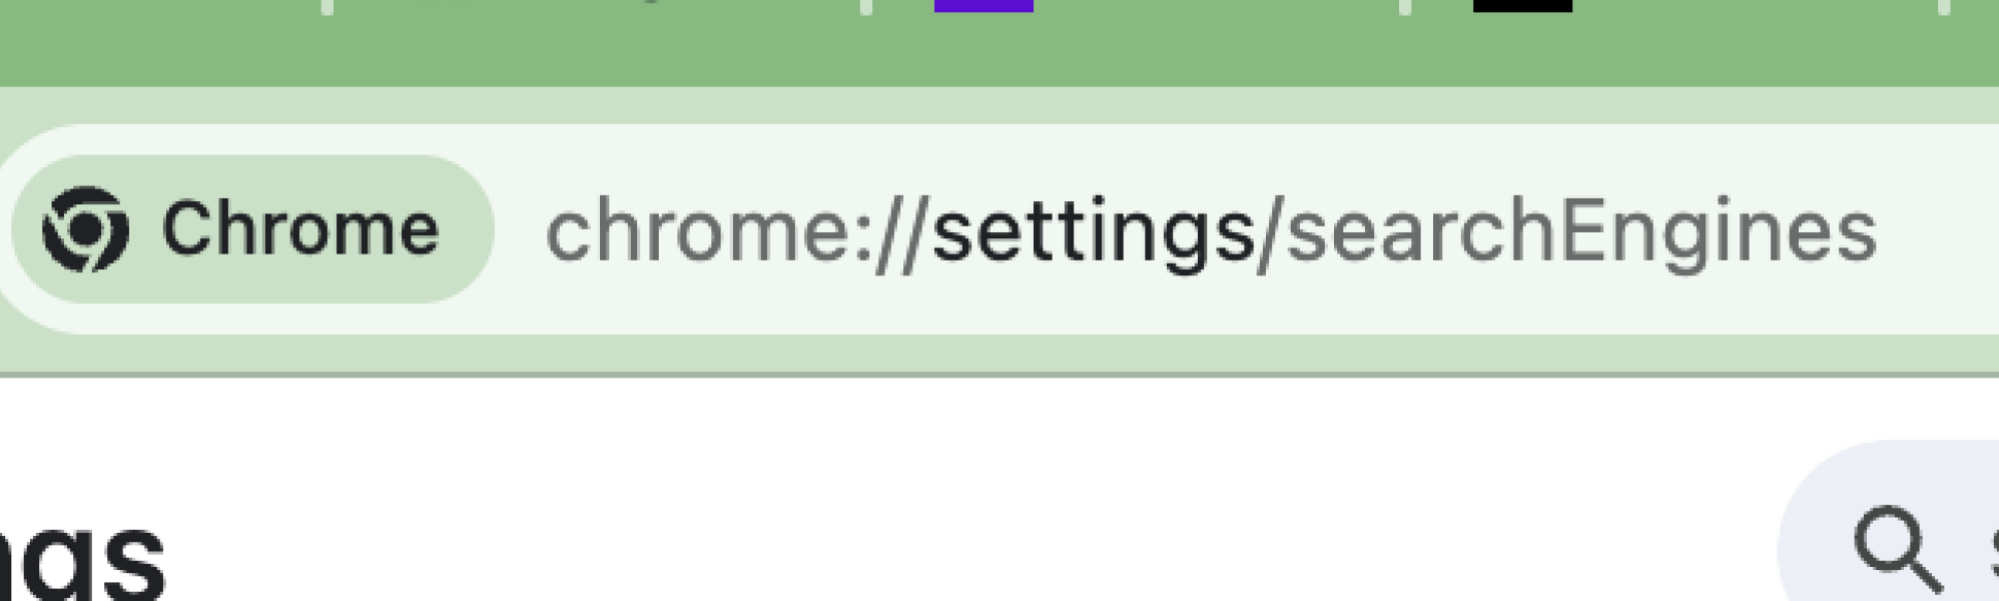 Capture d'écran de "chrome://settings/searchEngines" dans la barre d'URL